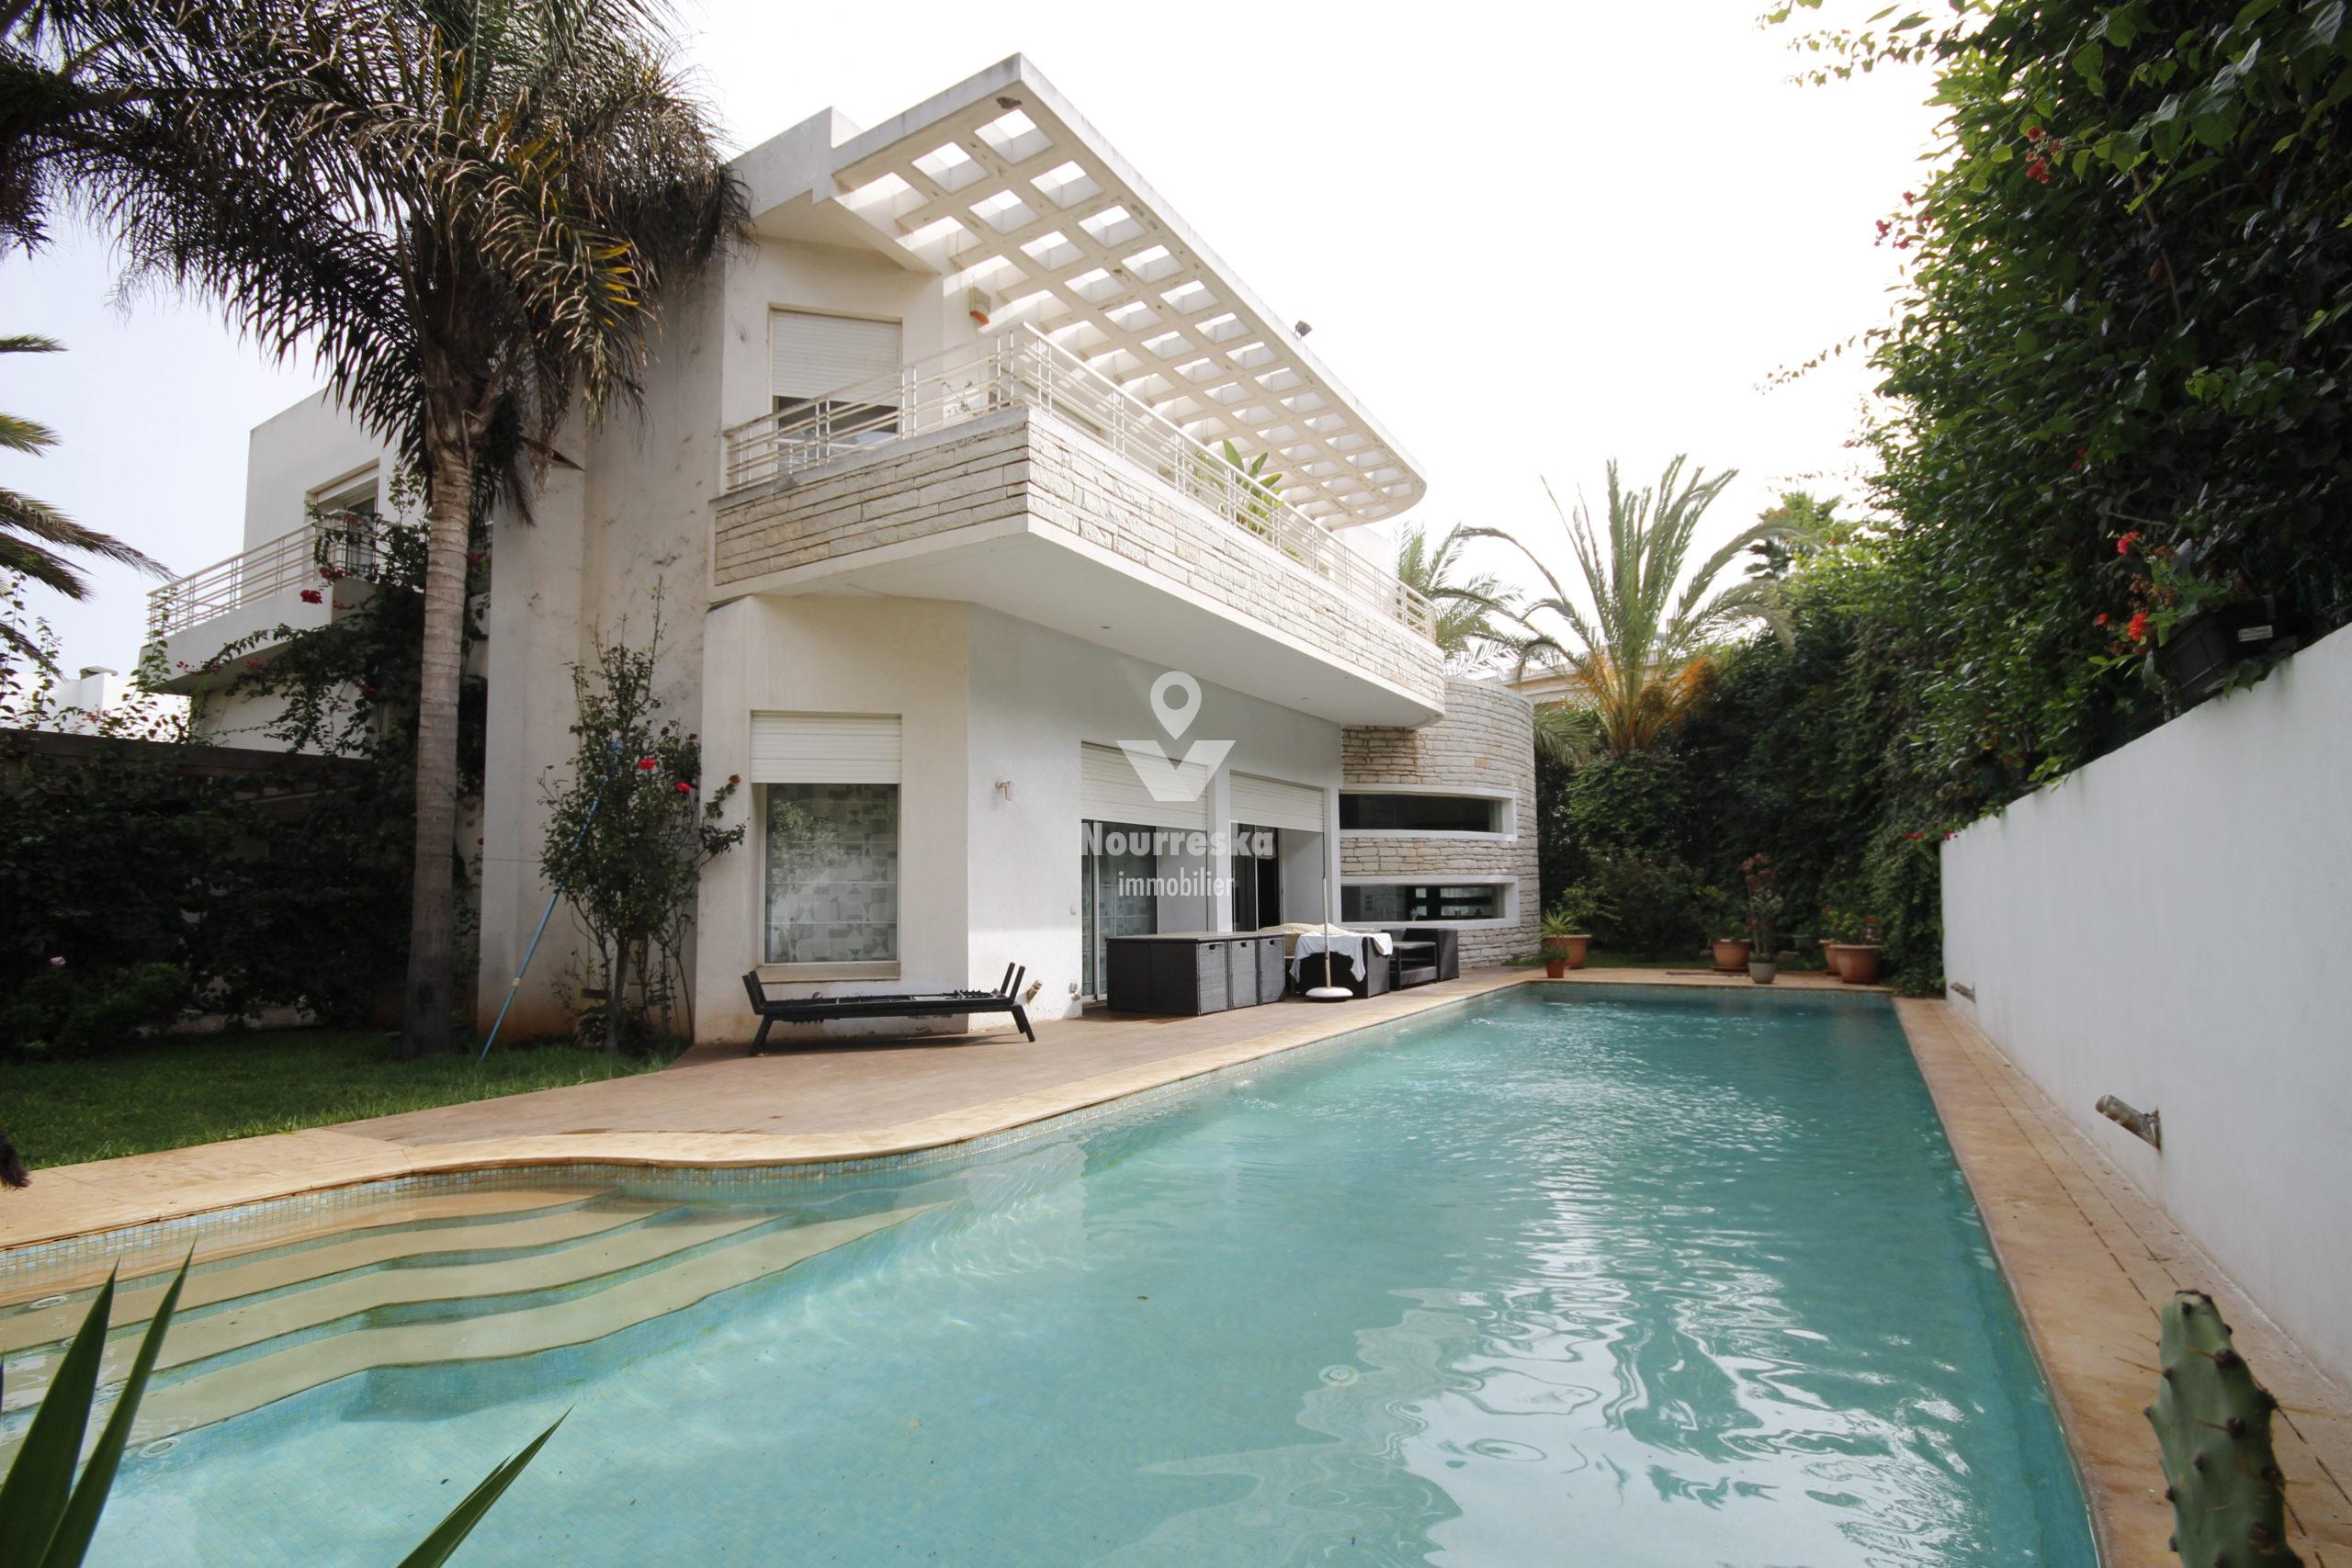 A Acheter Ain Diab Villa d’Architecte d’angle 550 m² Habitable + Piscine